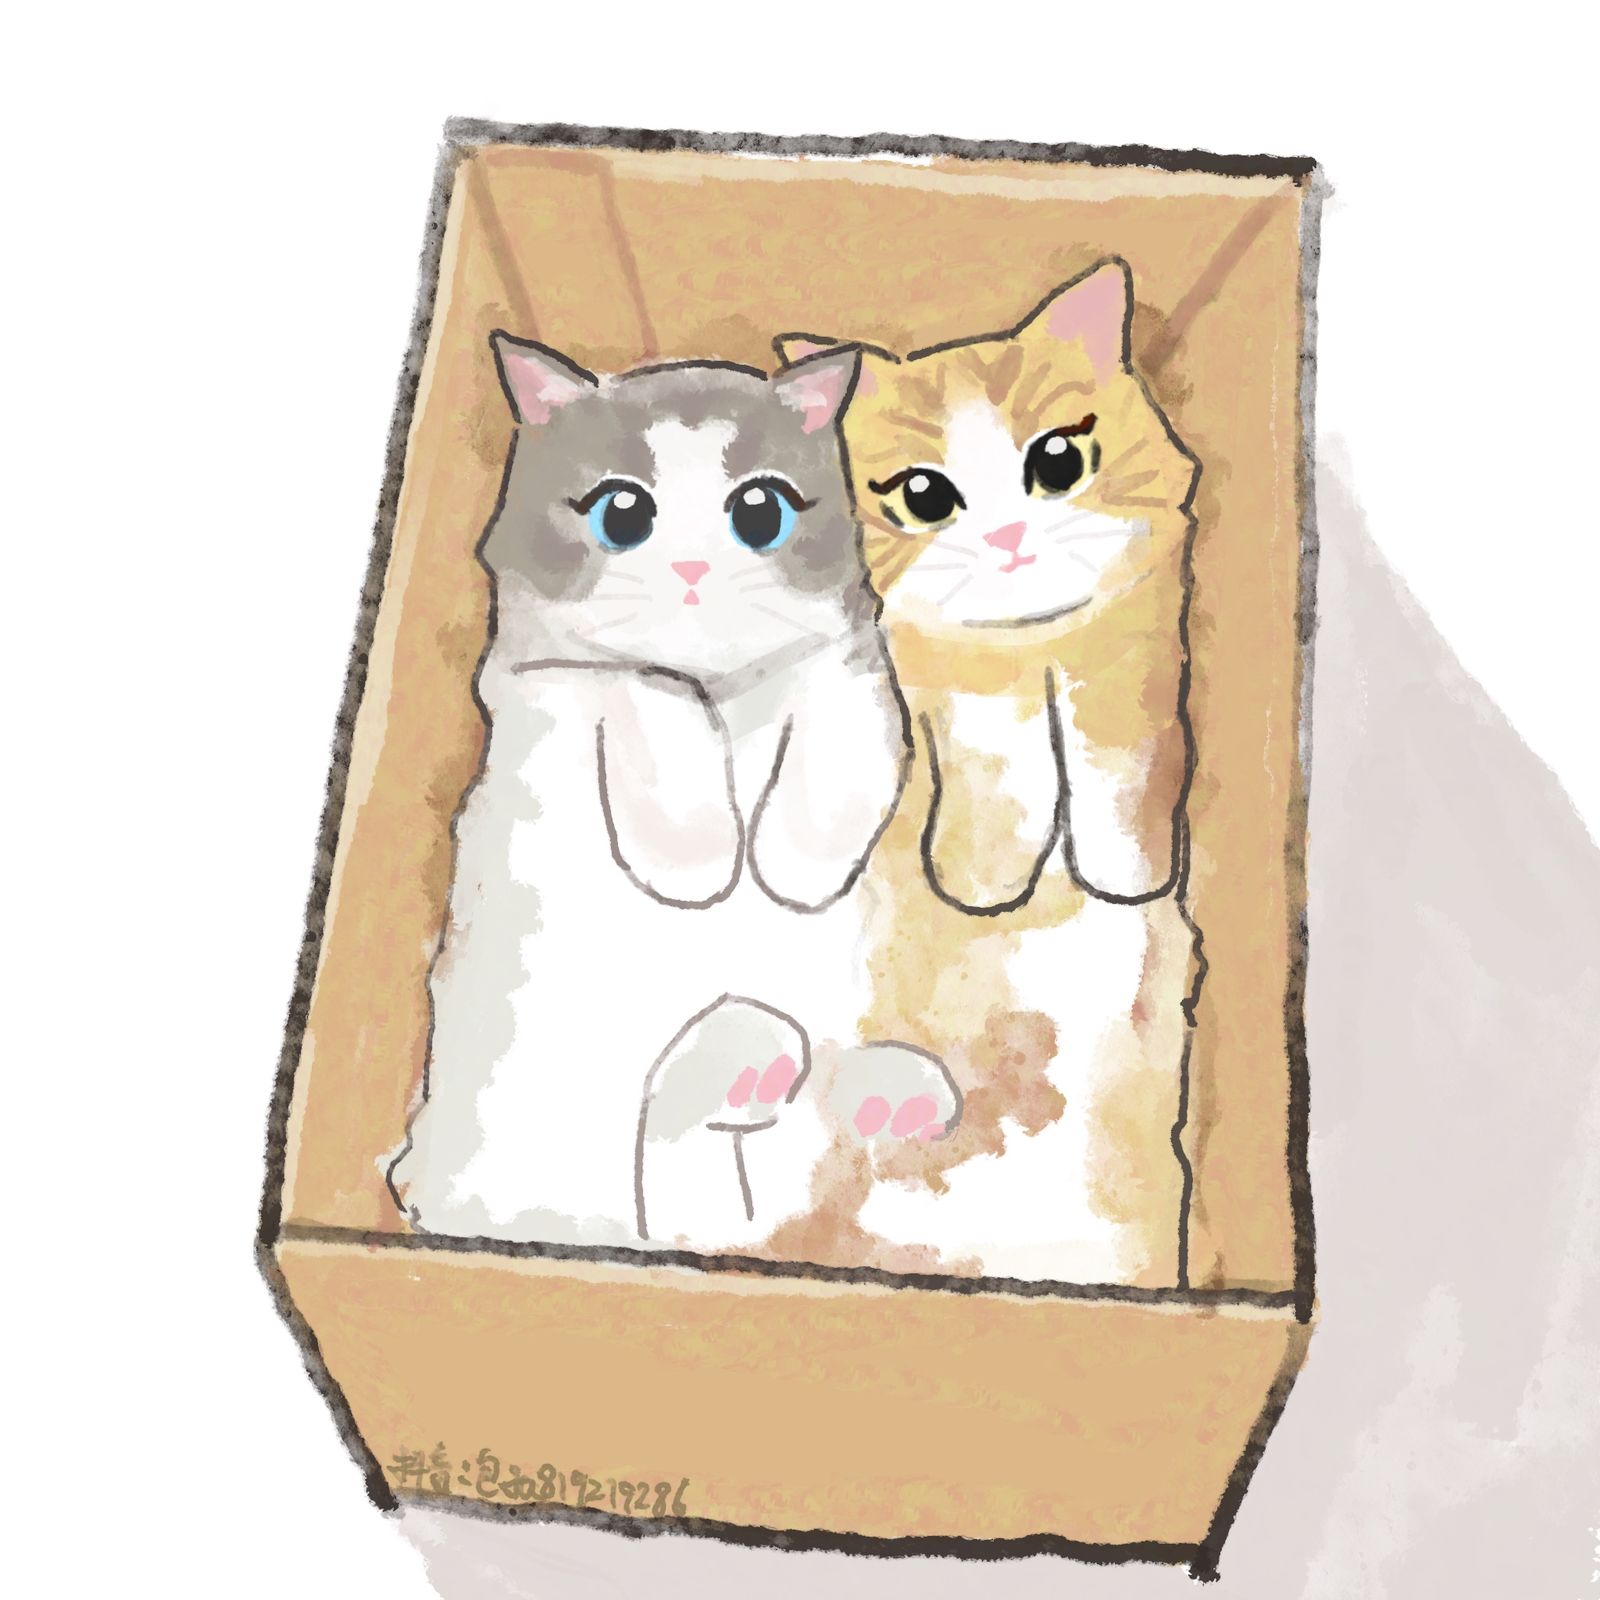 装进盒子里的猫猫